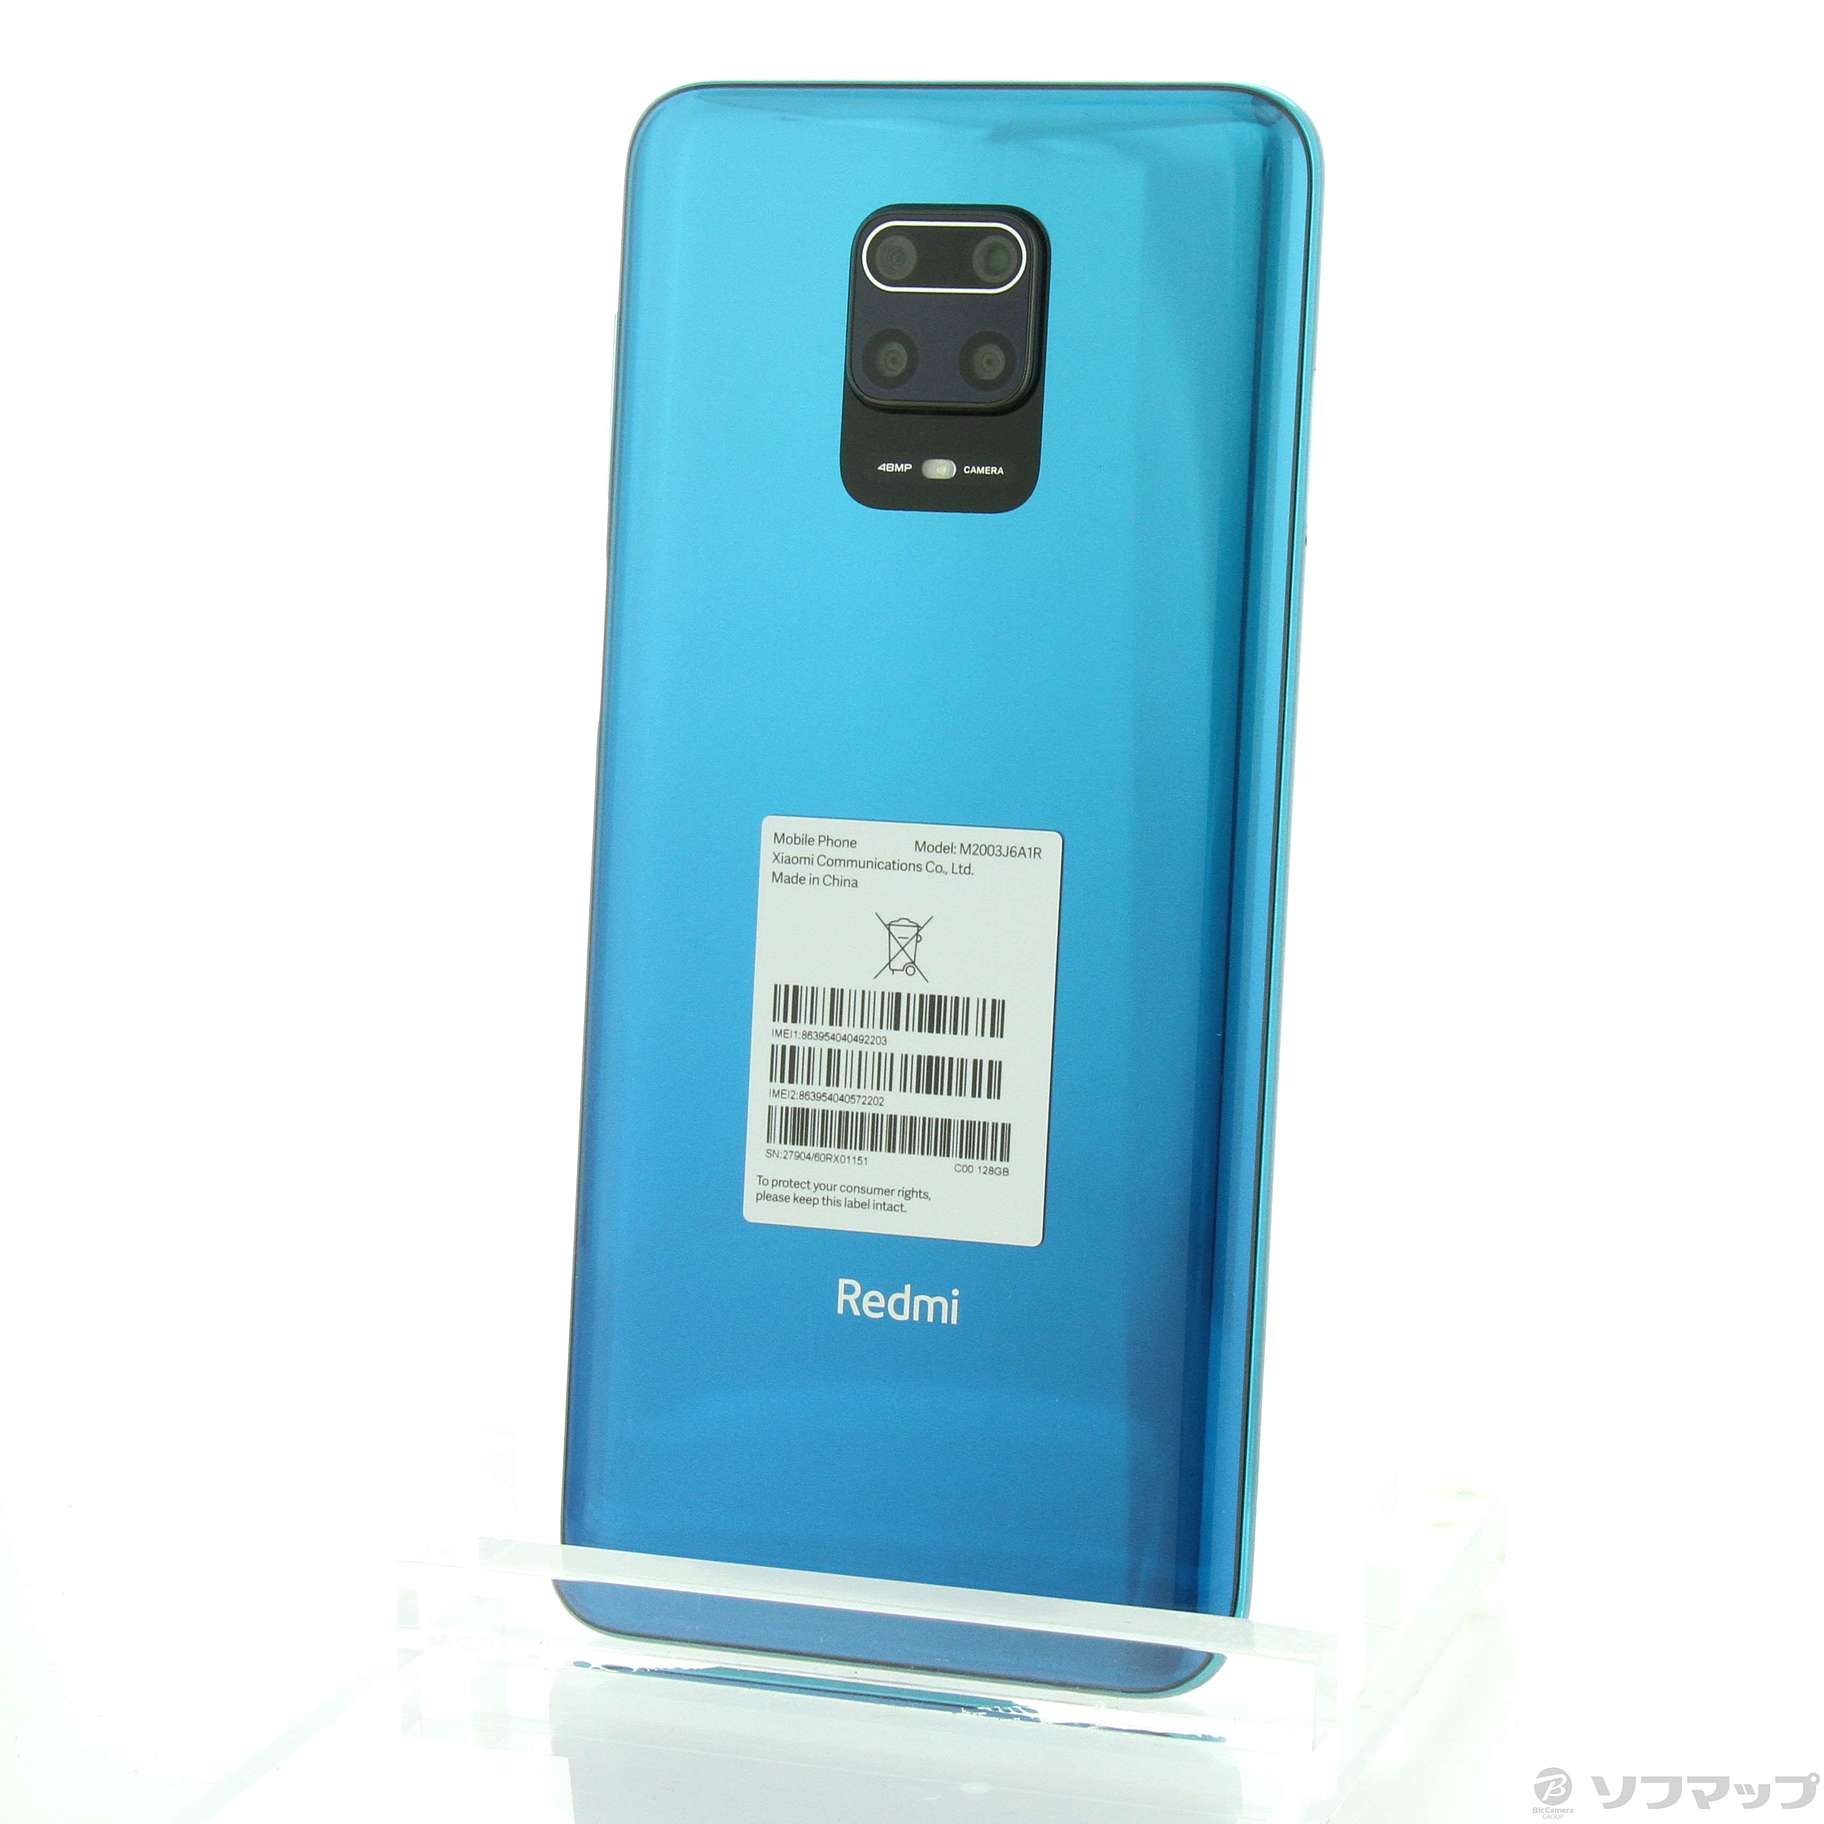 中古】Redmi Note 9S 128GB オーロラブルー M2003J6A1R SIMフリー